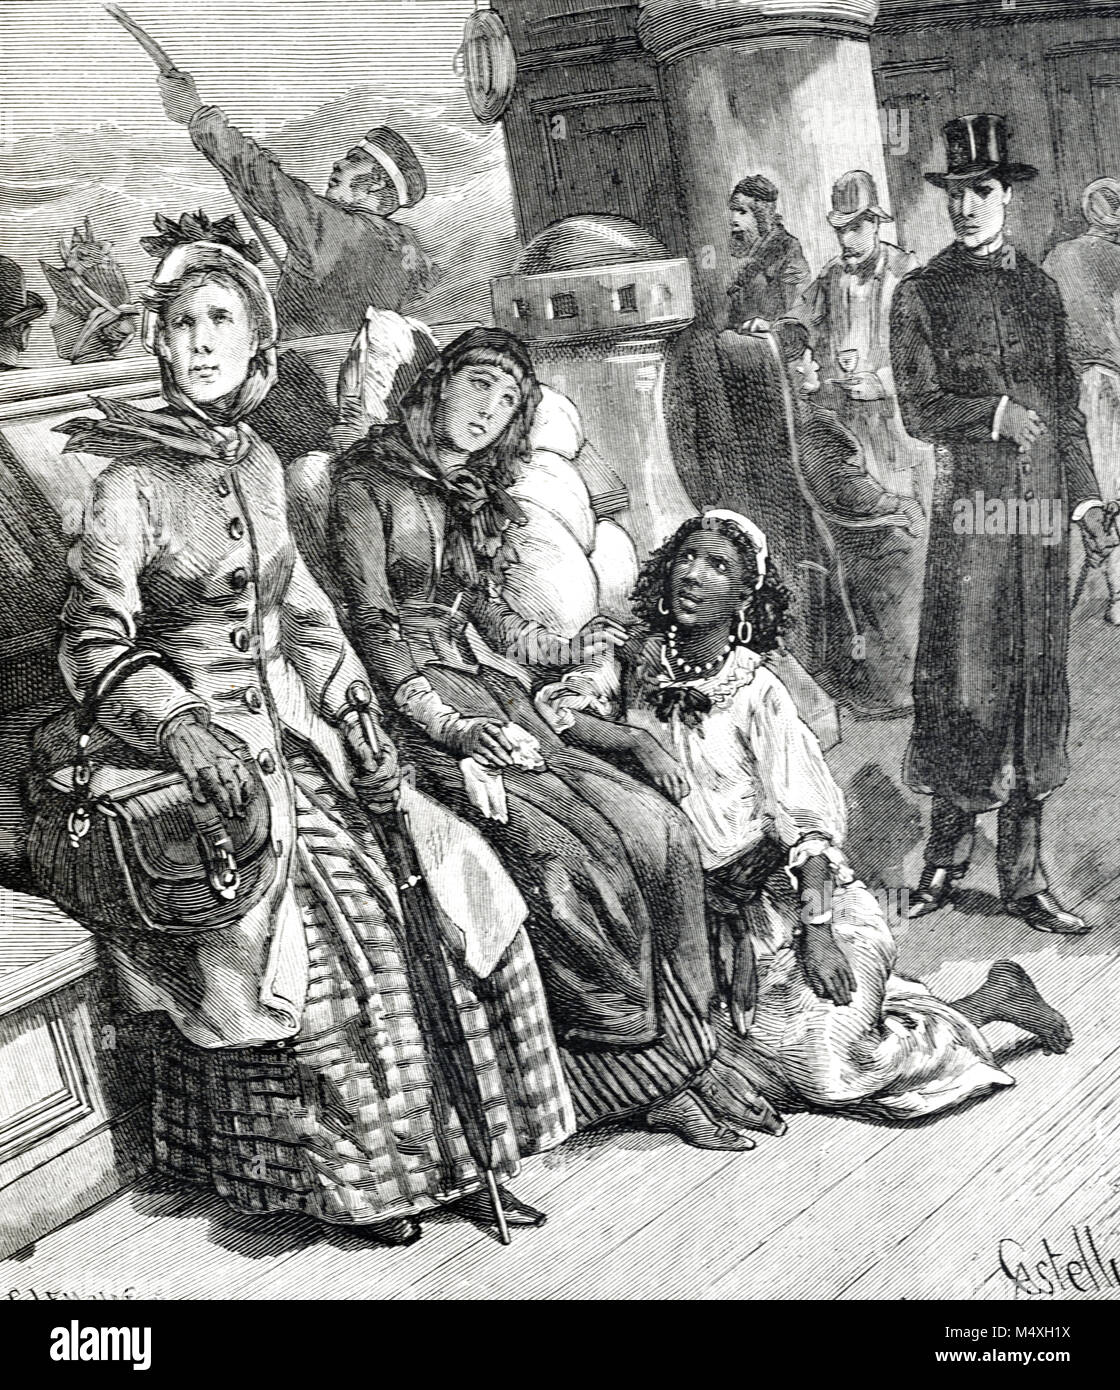 La riche ou Femmes européennes et aborigène australien ou Maid serviteur Voyager un paquebot ou navire à passagers au début de l'Angleterre à l'Australie (gravure, 1888) Banque D'Images